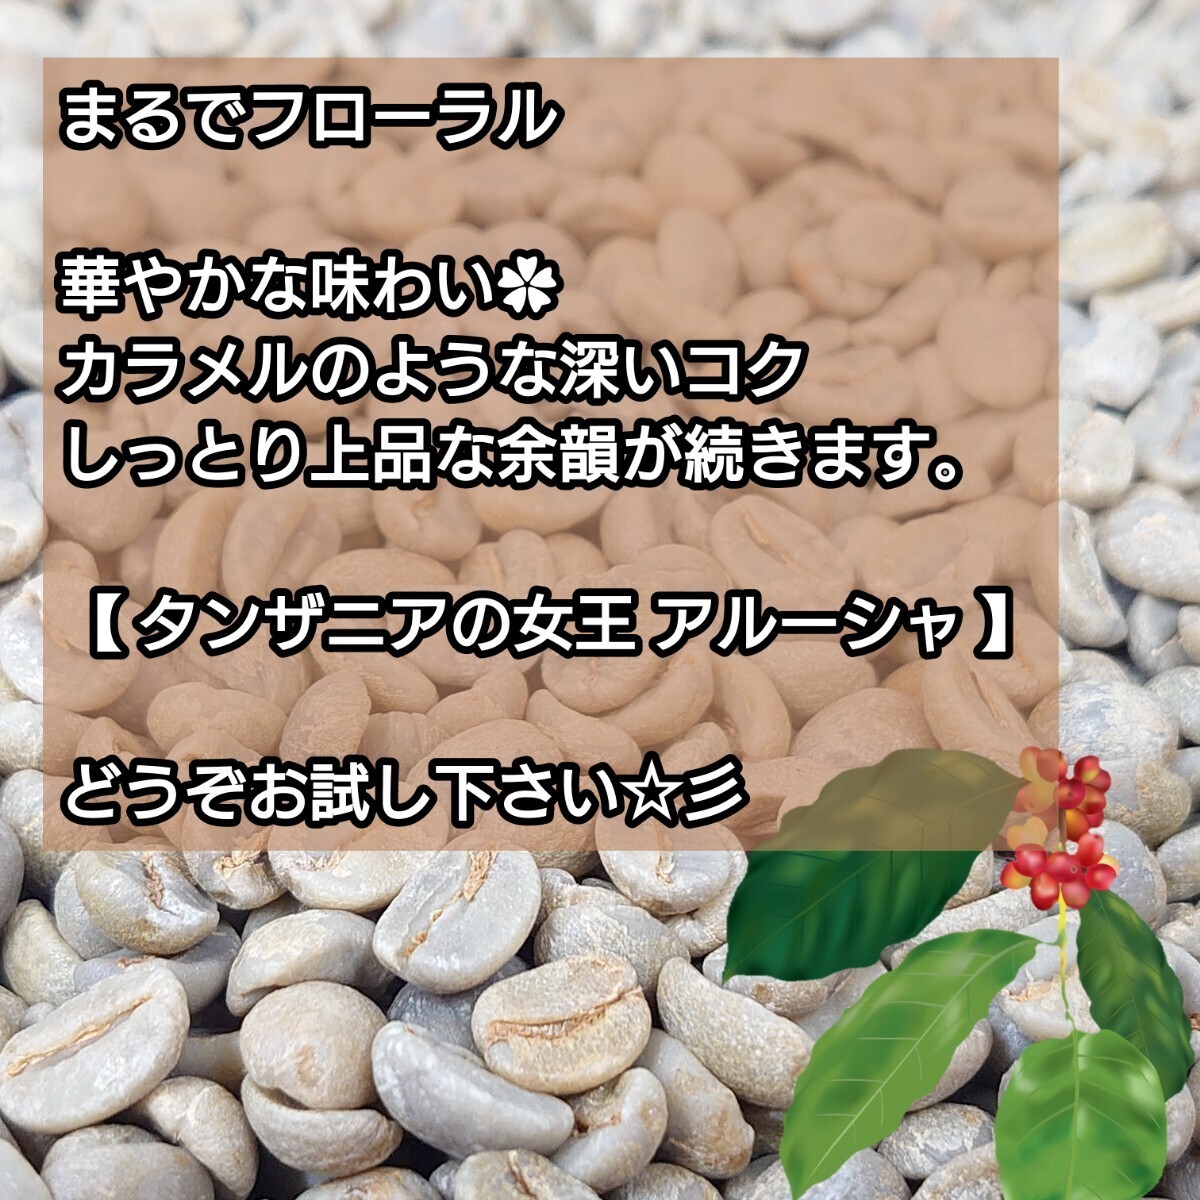 【 豆 】 タンザニア AA キリマンジャロ クイーンアルーシャ 生豆時 200g【84点】 スペシャルティ コーヒー 珈琲 自家焙煎 コーヒー豆の画像4